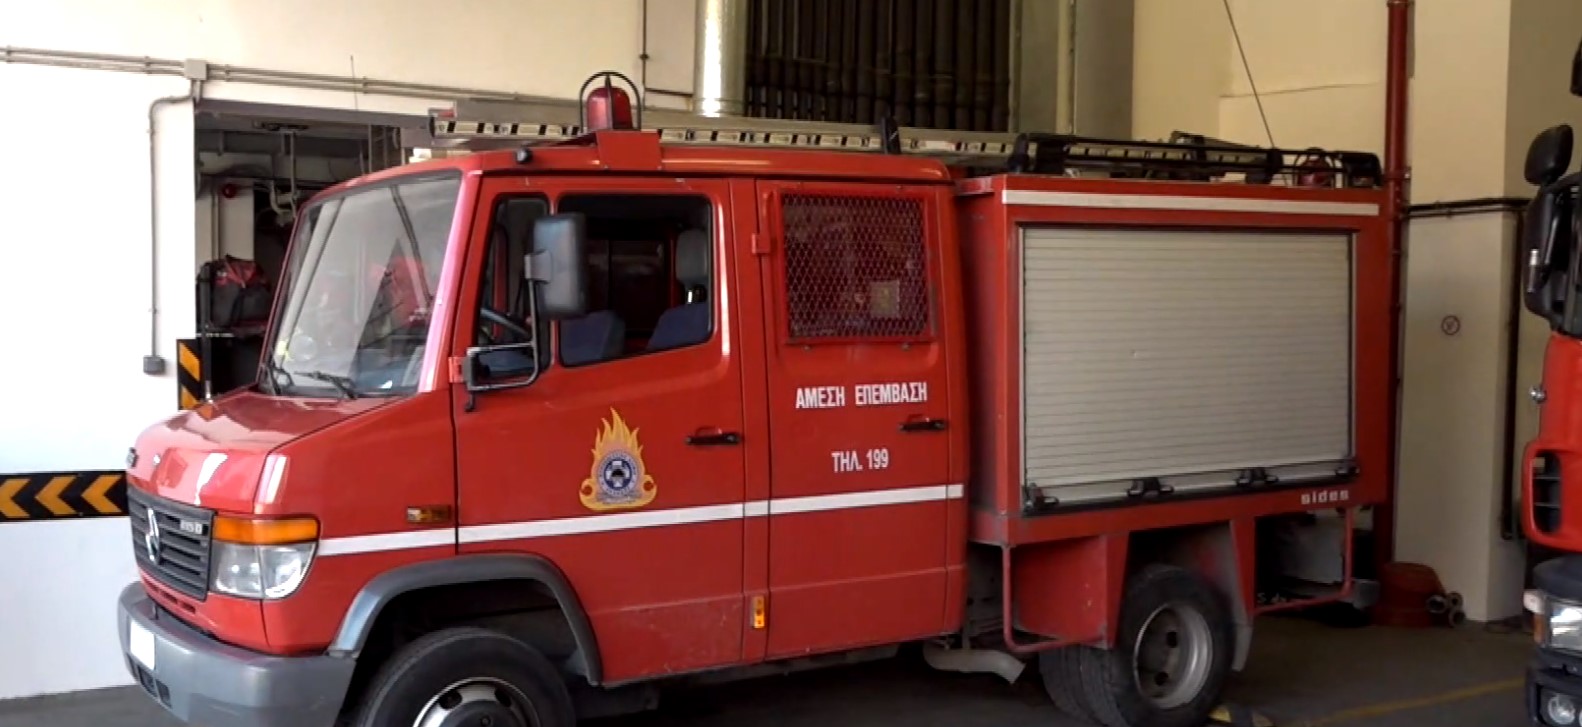 Γιορτή της Πυροσβεστικής υπηρεσίας: Ενημέρωση του κοινού για την προσφορά, παρά τους κινδύνους